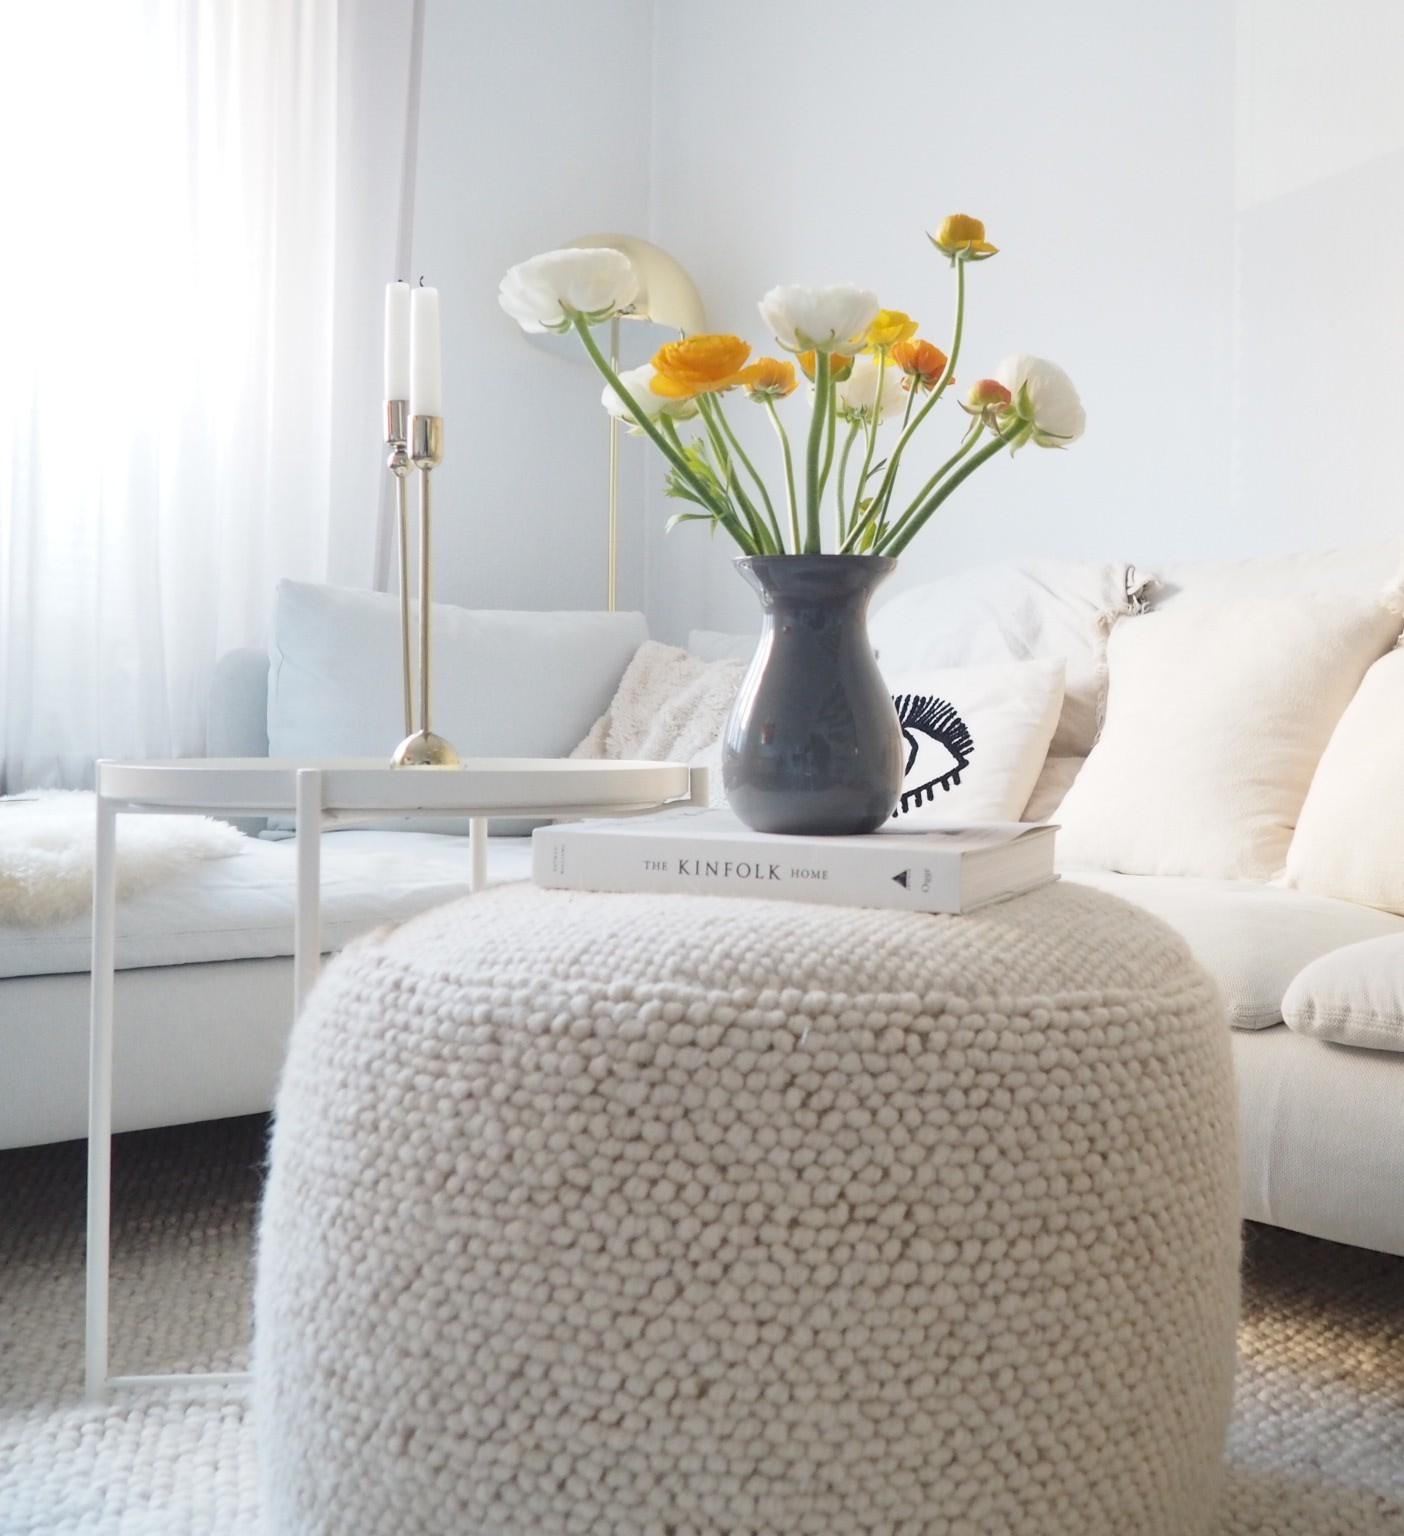 #wohnzimmer #couch #ranunkeln #blumenliebe #skandi #hygge #couchliebt #couchstyle